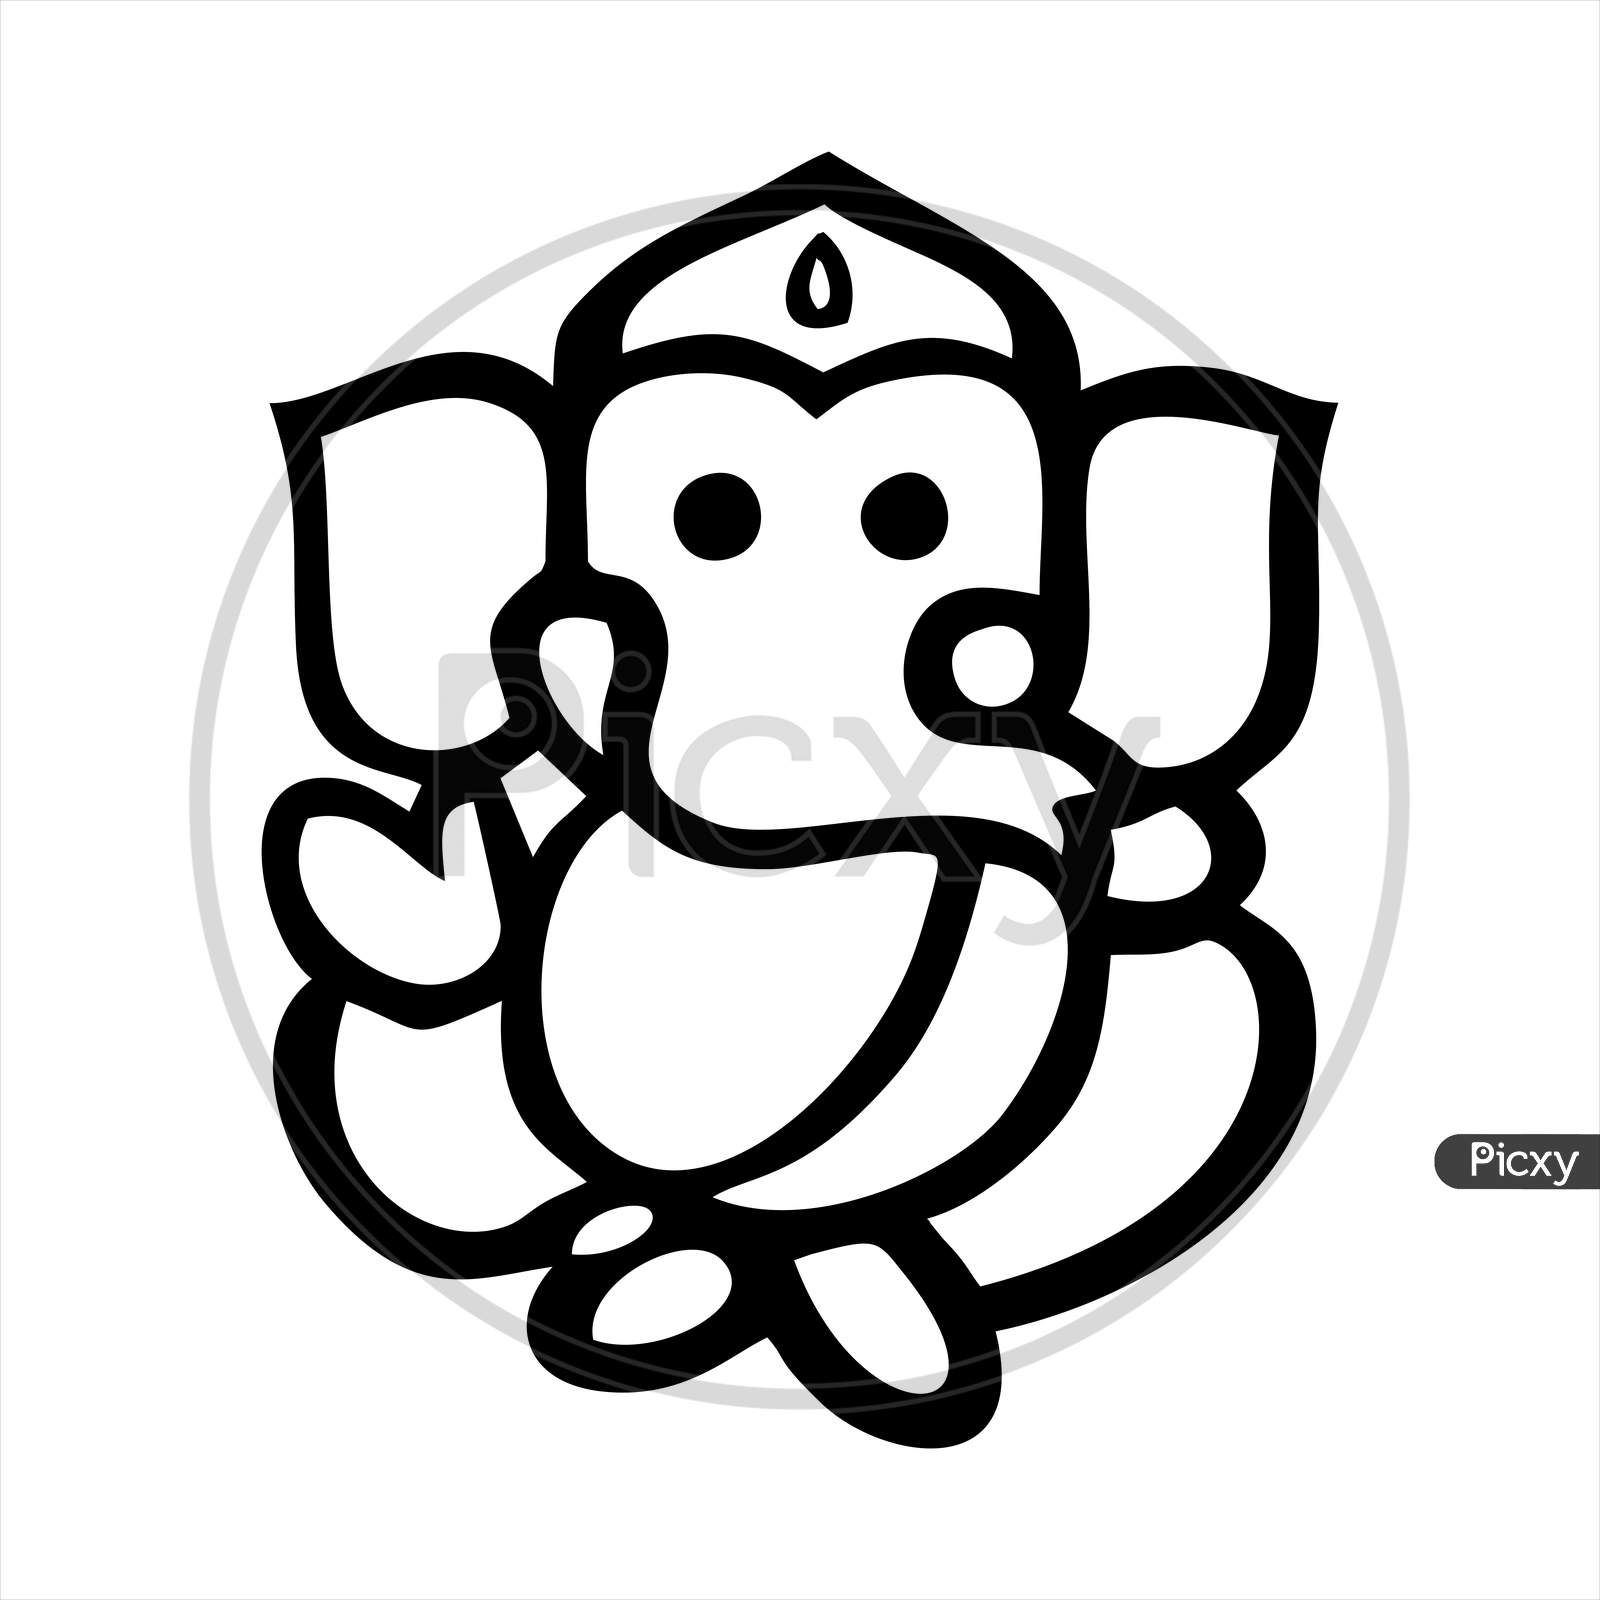 Free Download Hindu God Lord Ganesha Vector Image. Free Printable Lord  Ganesha Coloring Image for kids. | Book art drawings, Ganesh art paintings, Ganesha  drawing